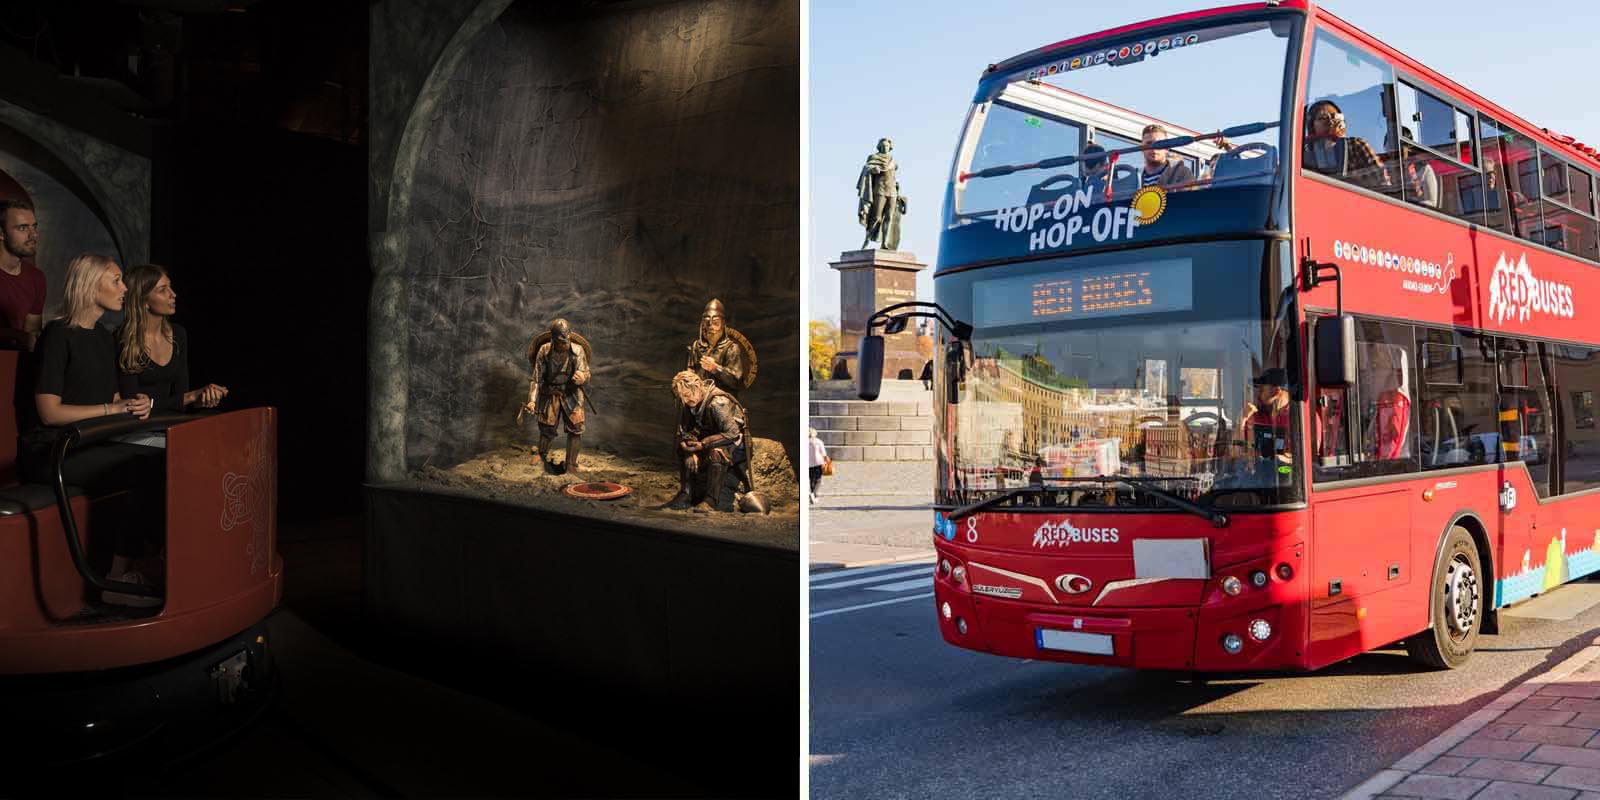 Stockholm Bus + Viking Museum